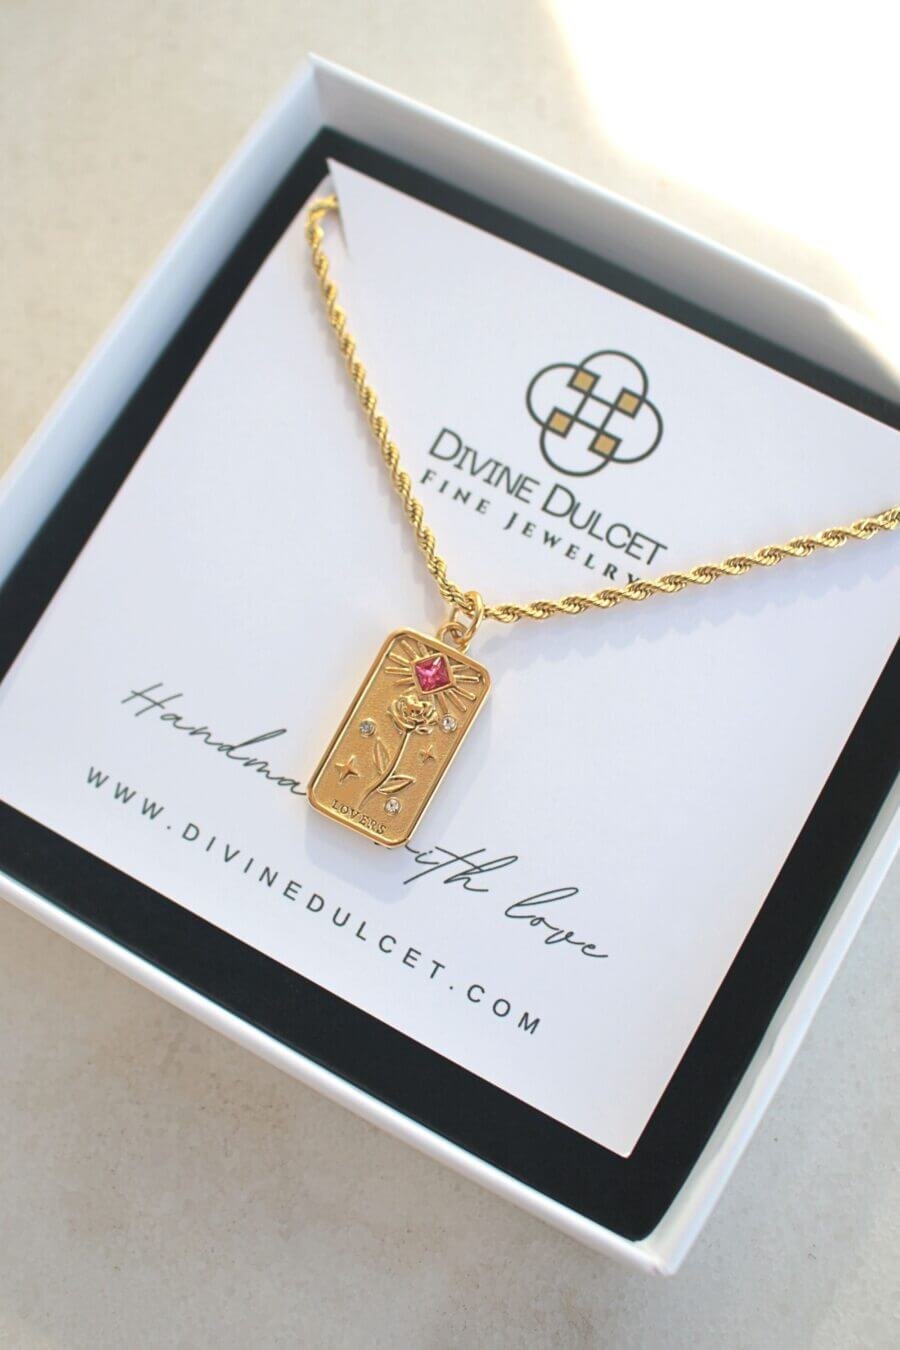 Tarot Card Necklace - 24K Gold Necklaces ⋆ DIVINE DULCET